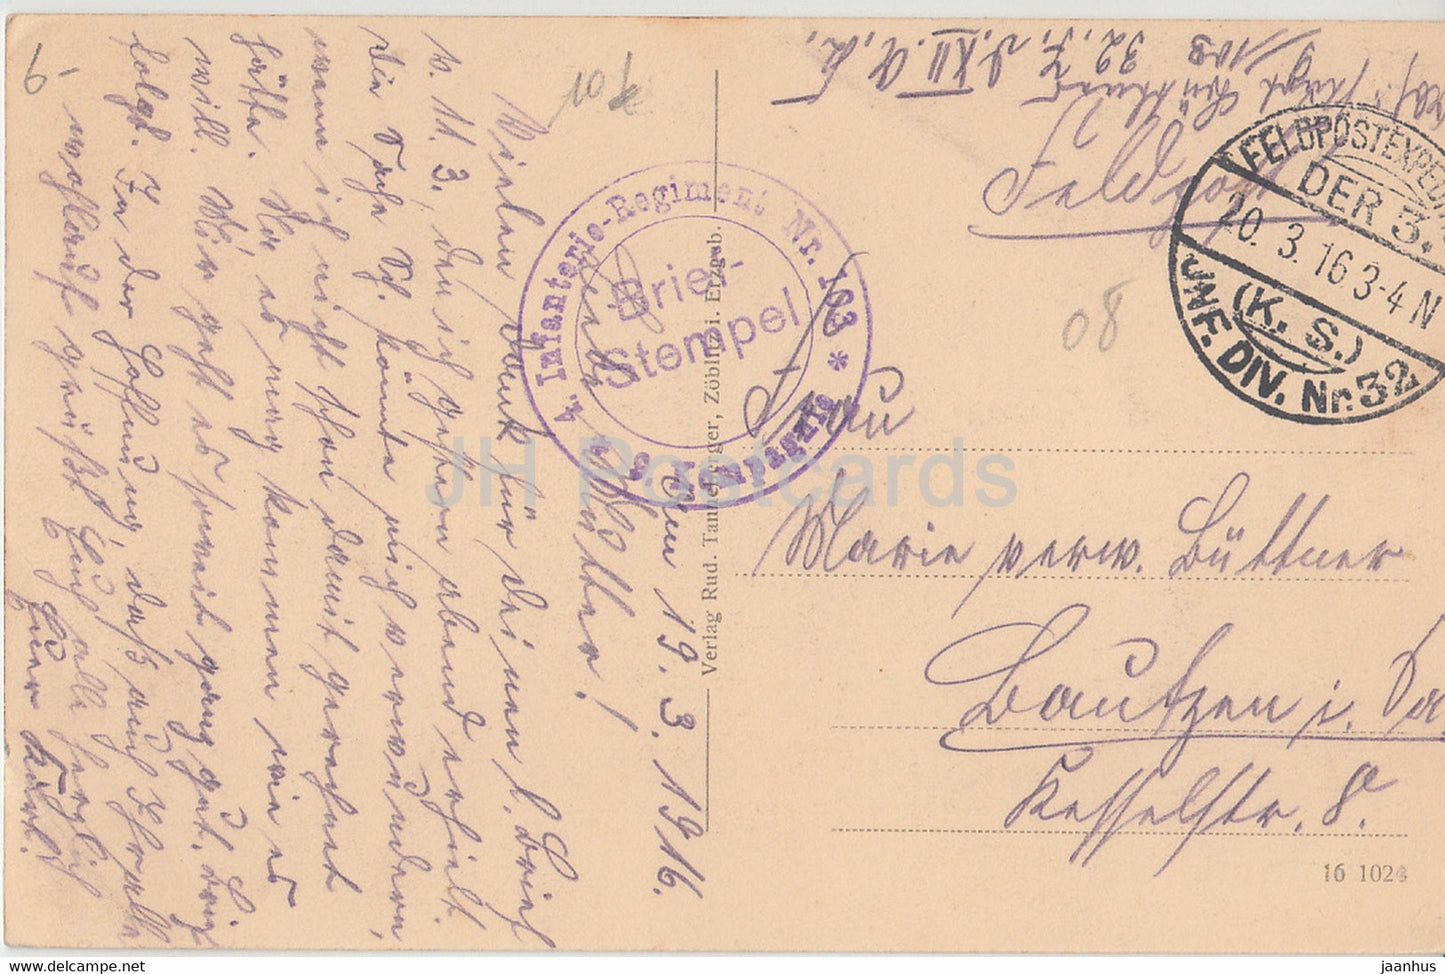 Rethel - Régiment d'infanterie Nr 103 - Feldpost - Militaire - carte postale ancienne - 1916 - France - occasion